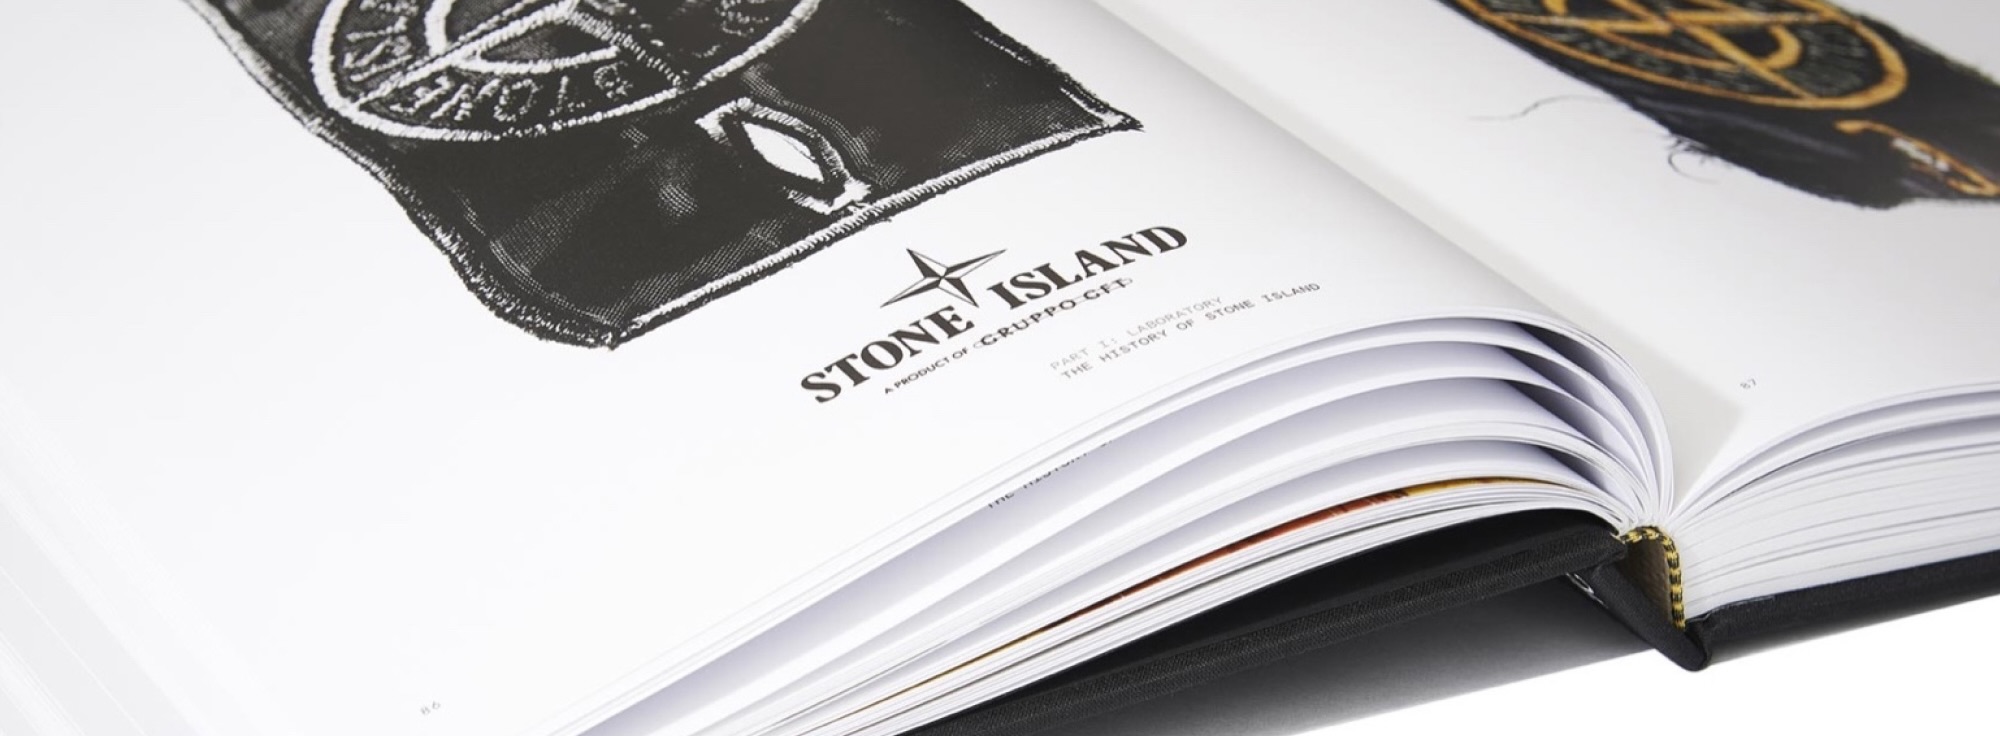 Stone Island - история бренда, ставшего символом эпохи.